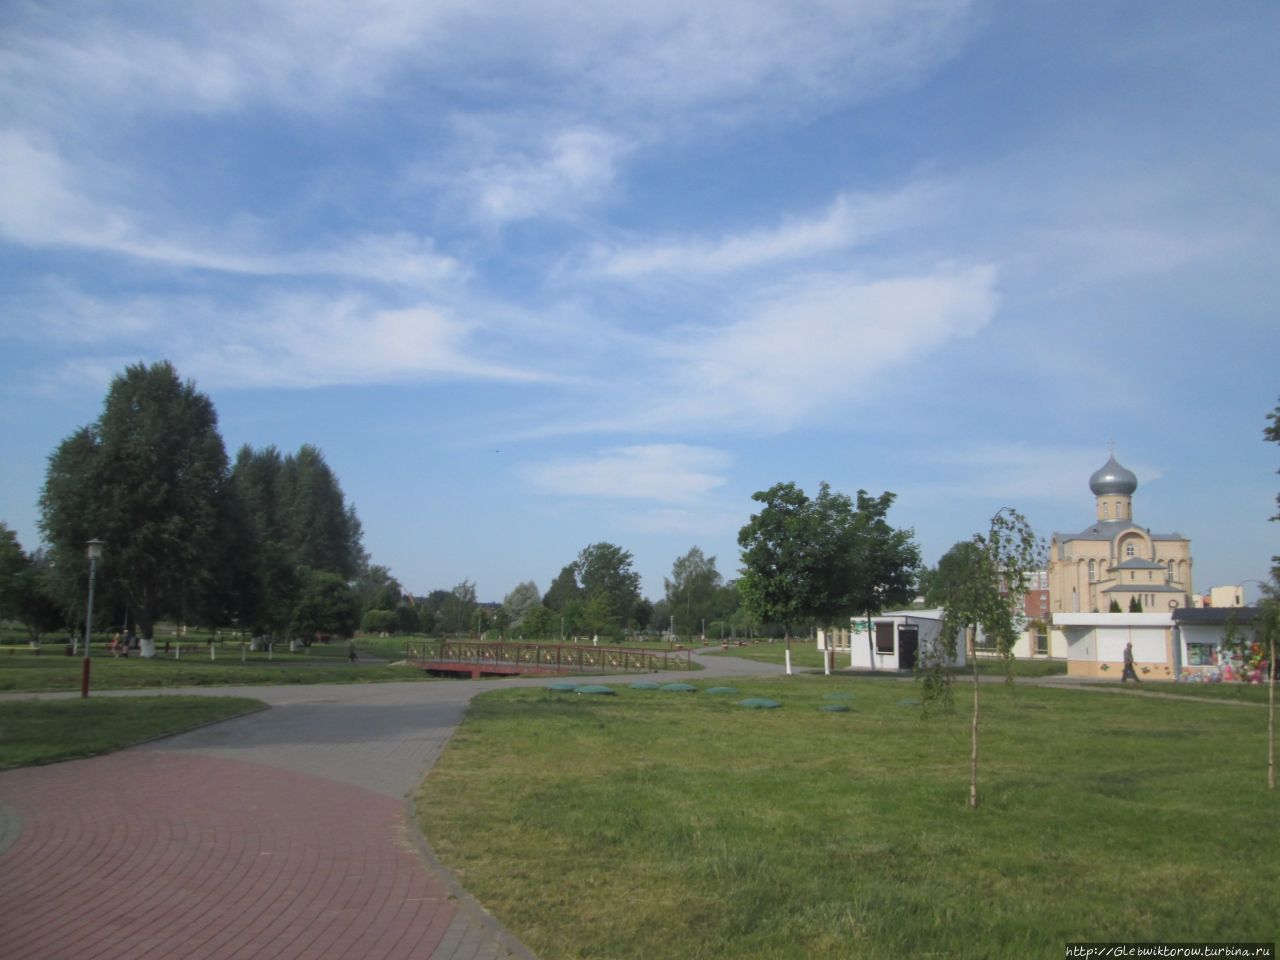 Прогулка по скверам и паркам Волковыск, Беларусь